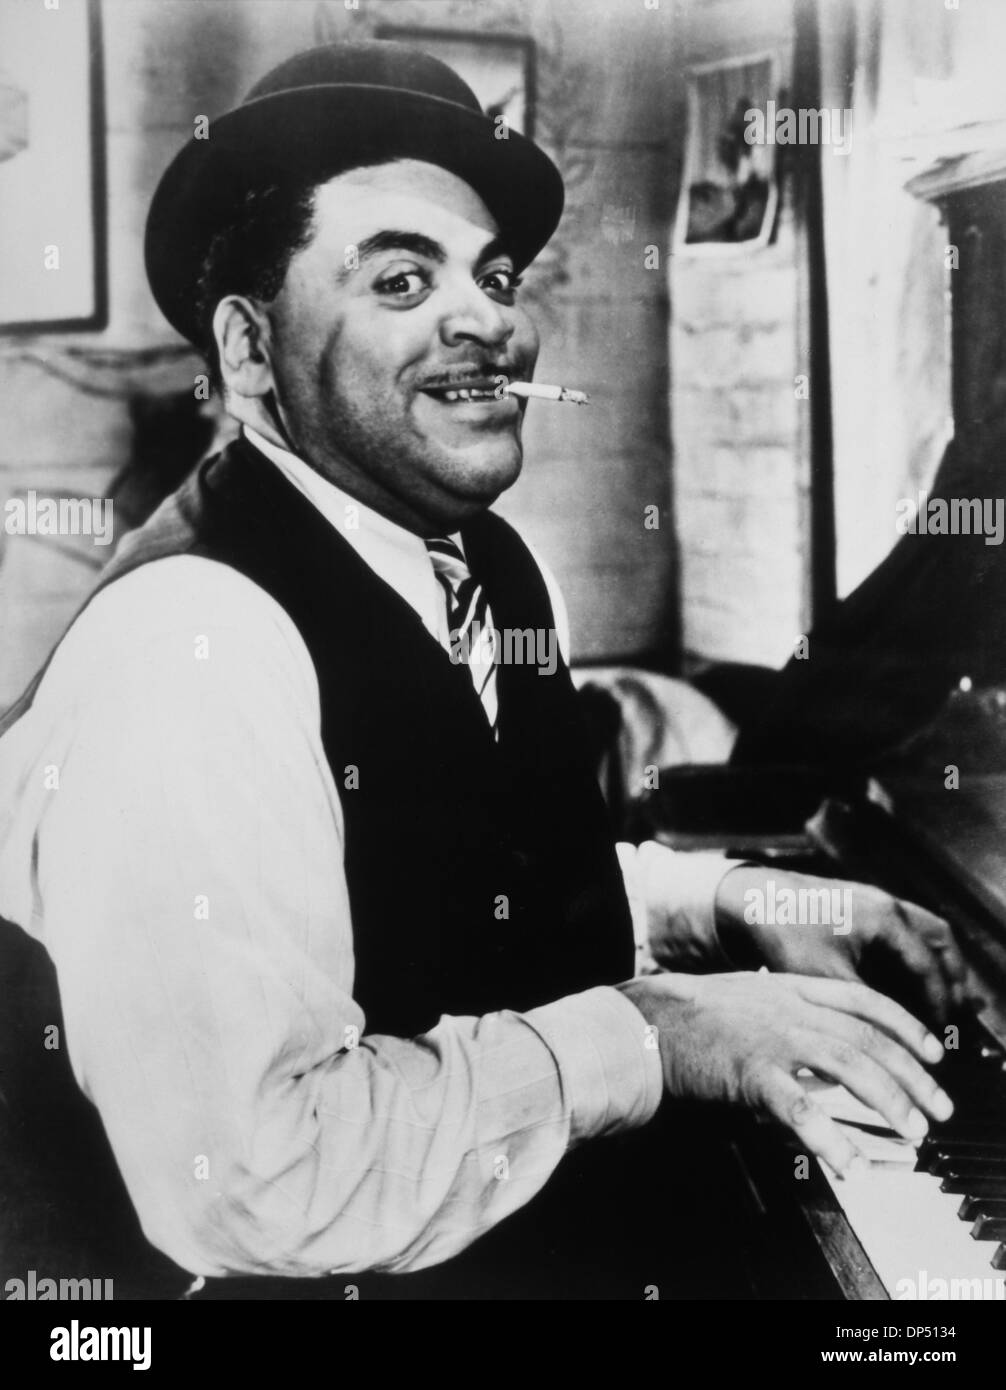 Fats Waller (1904-1943), American Jazz Pianist, il cantante e compositore, suonare il pianoforte mentre il fumo di sigarette, 1942 Foto Stock